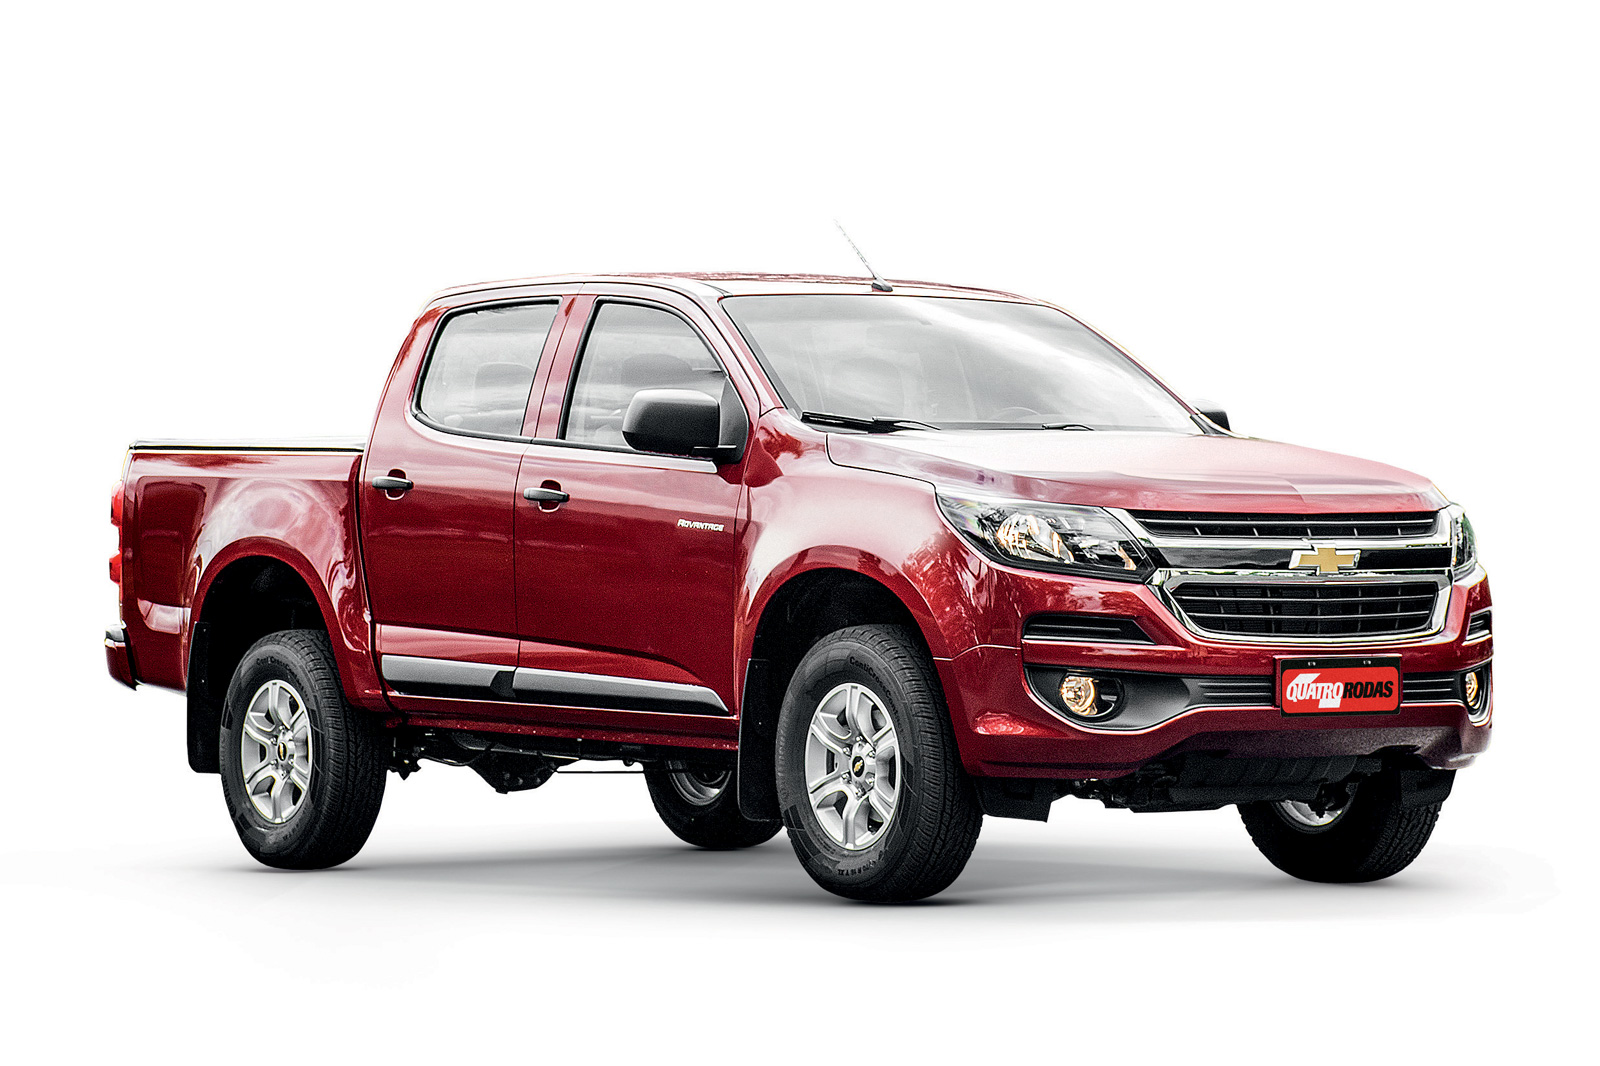 Chevrolet anuncia aumento de 4% nos preços de toda a sua linha no Brasil;  Onix Joy parte de R$ 52.150